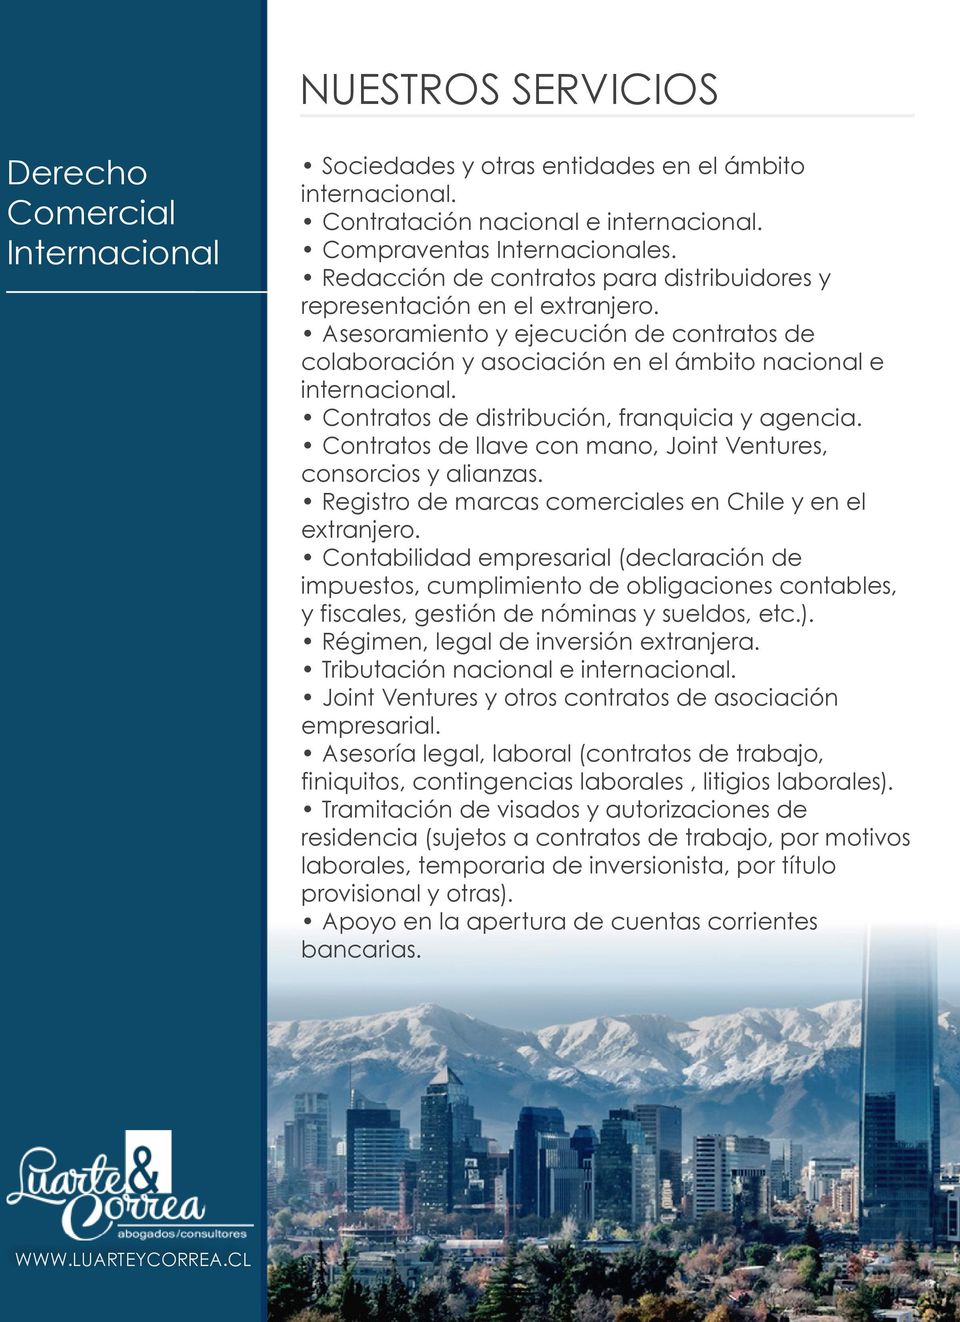 Contratos de distribución, franquicia y agencia. Contratos de llave con mano, Joint Ventures, consorcios y alianzas. Registro de marcas comerciales en Chile y en el extranjero.